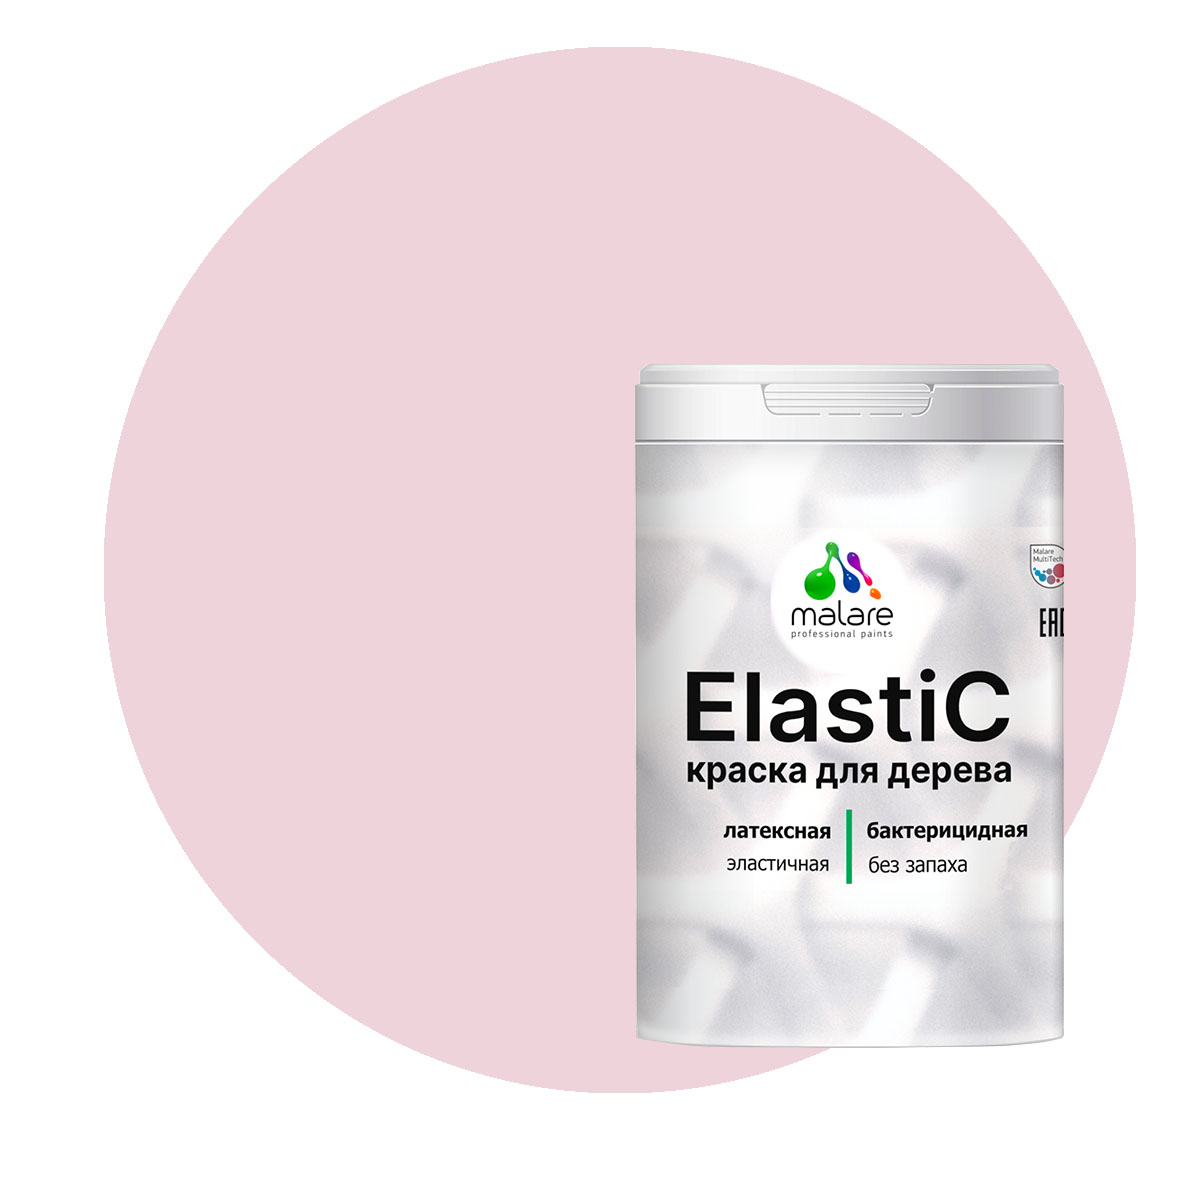 Краска Malare Elastic для деревянных поверхностей, бледно-розовый, 1 кг. краска malare для окон и дверей деревянных поверхностей бледно розовый 1 кг